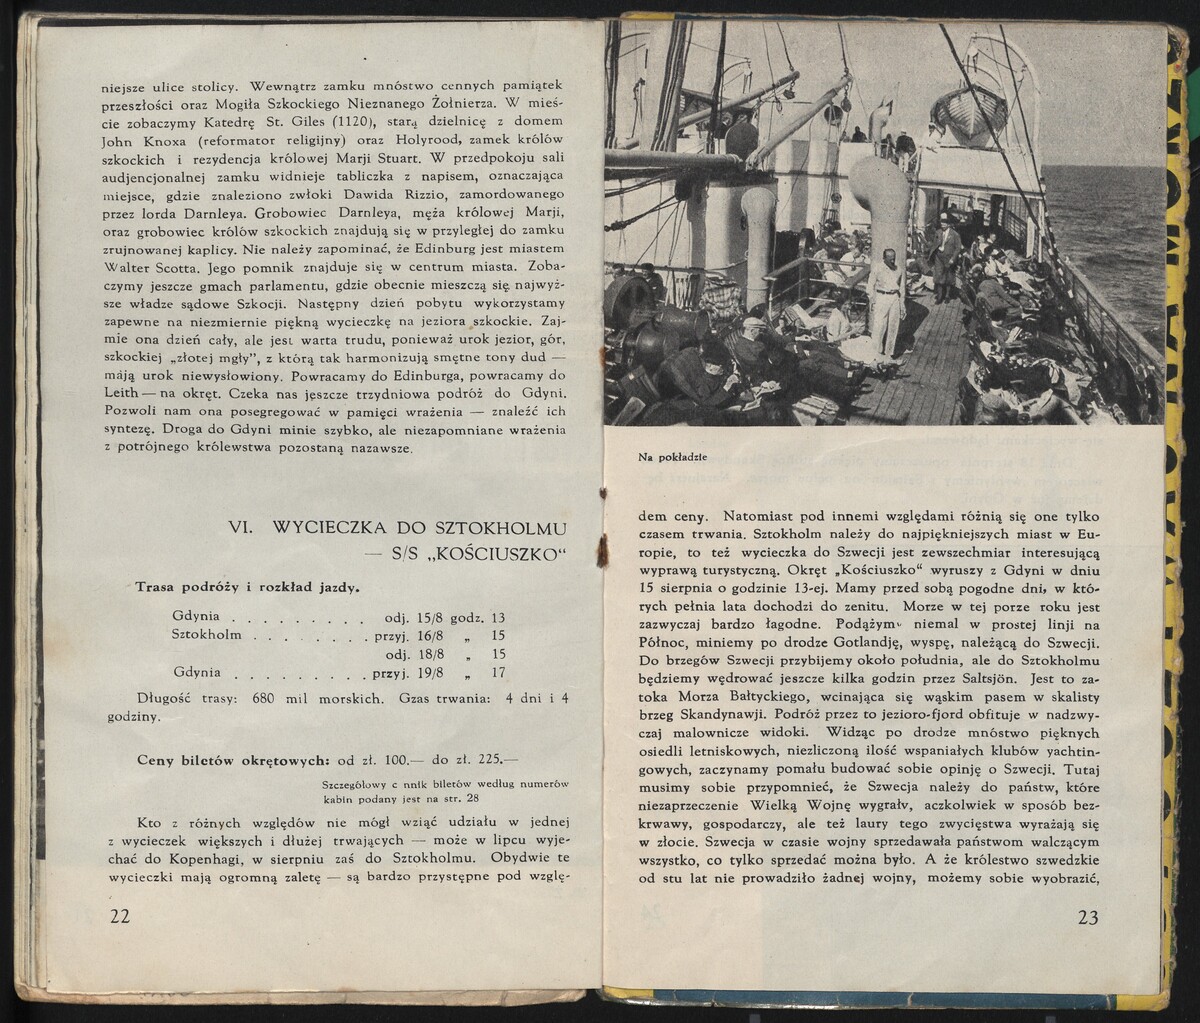 Opis wycieczki do Sztokholmu, 1933